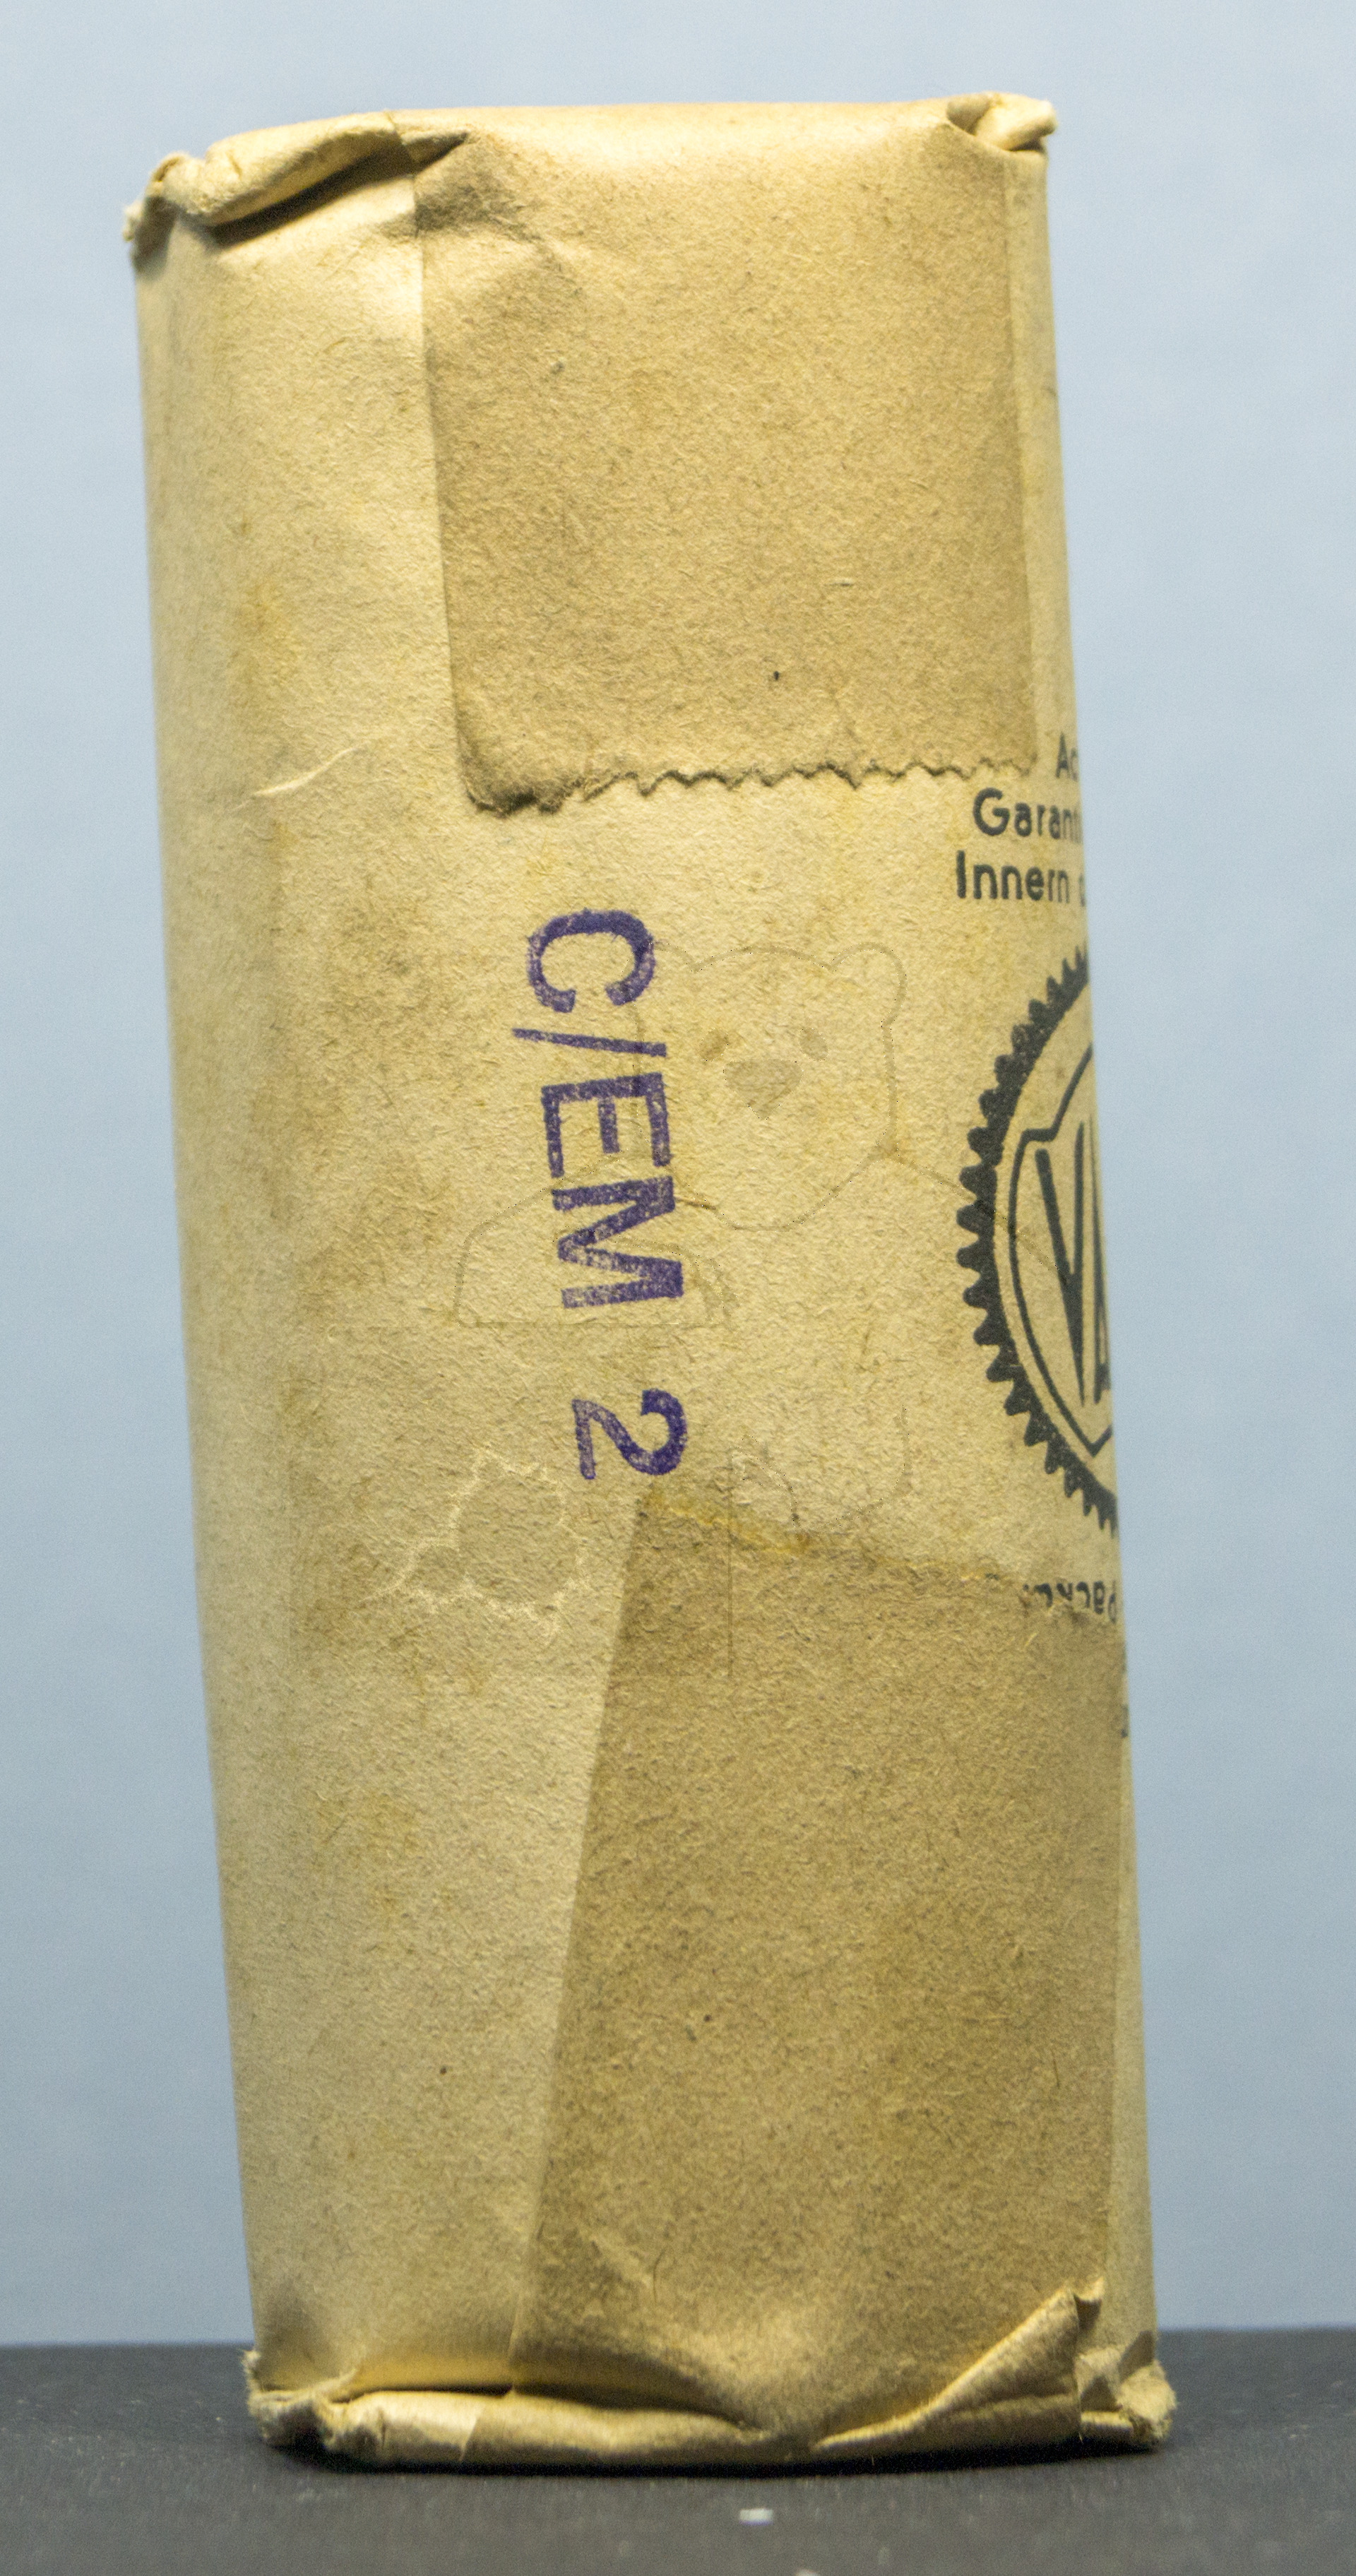 Röhre C-EM2 #6250 Verpackung Bild 2